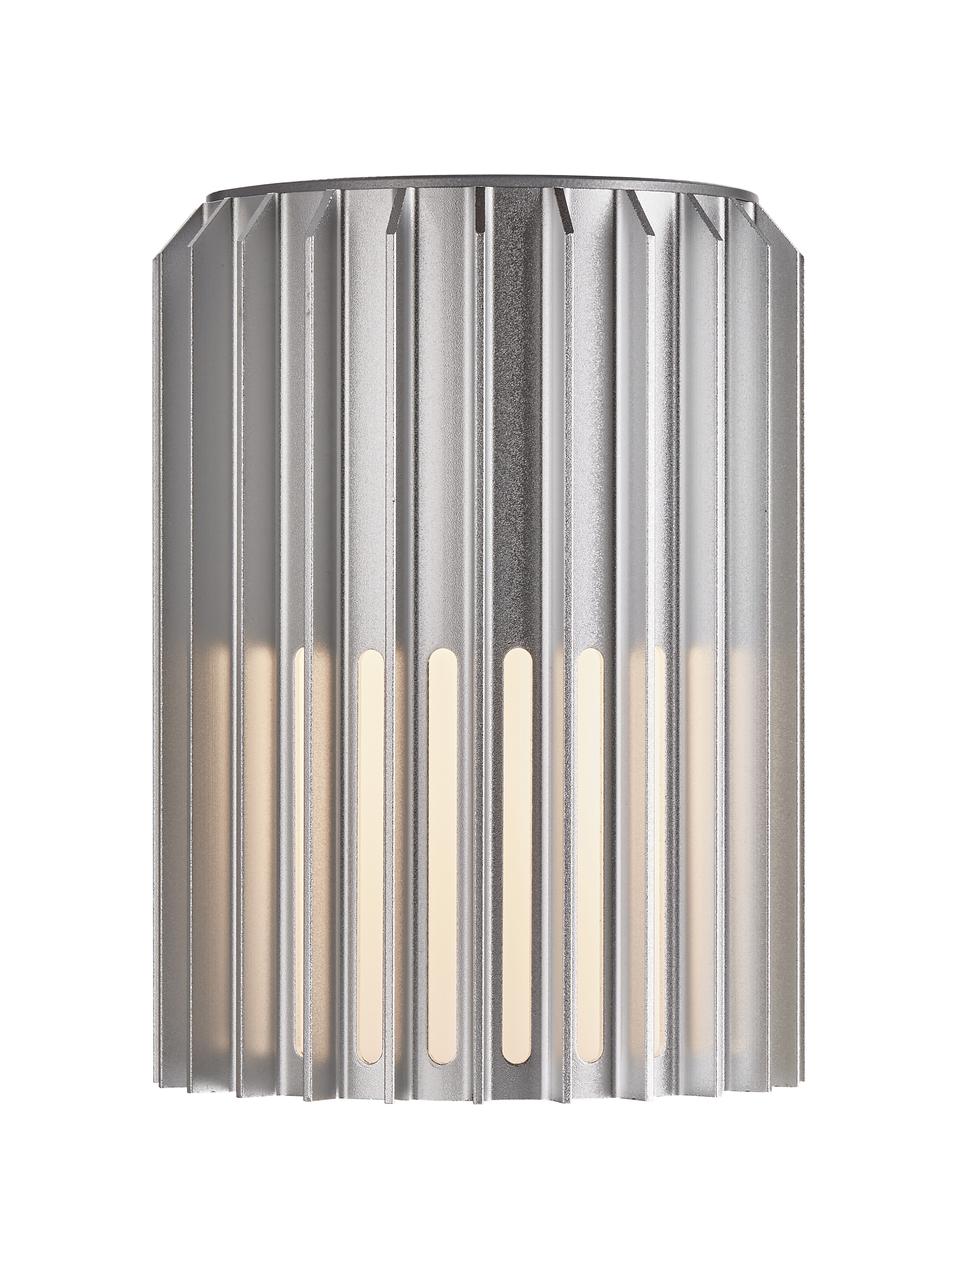 Aussenwandleuchte Matrix in Silber, Lampenschirm: Metall, beschichtet, Silberfarben, Opalweiss, 12 x 17 cm